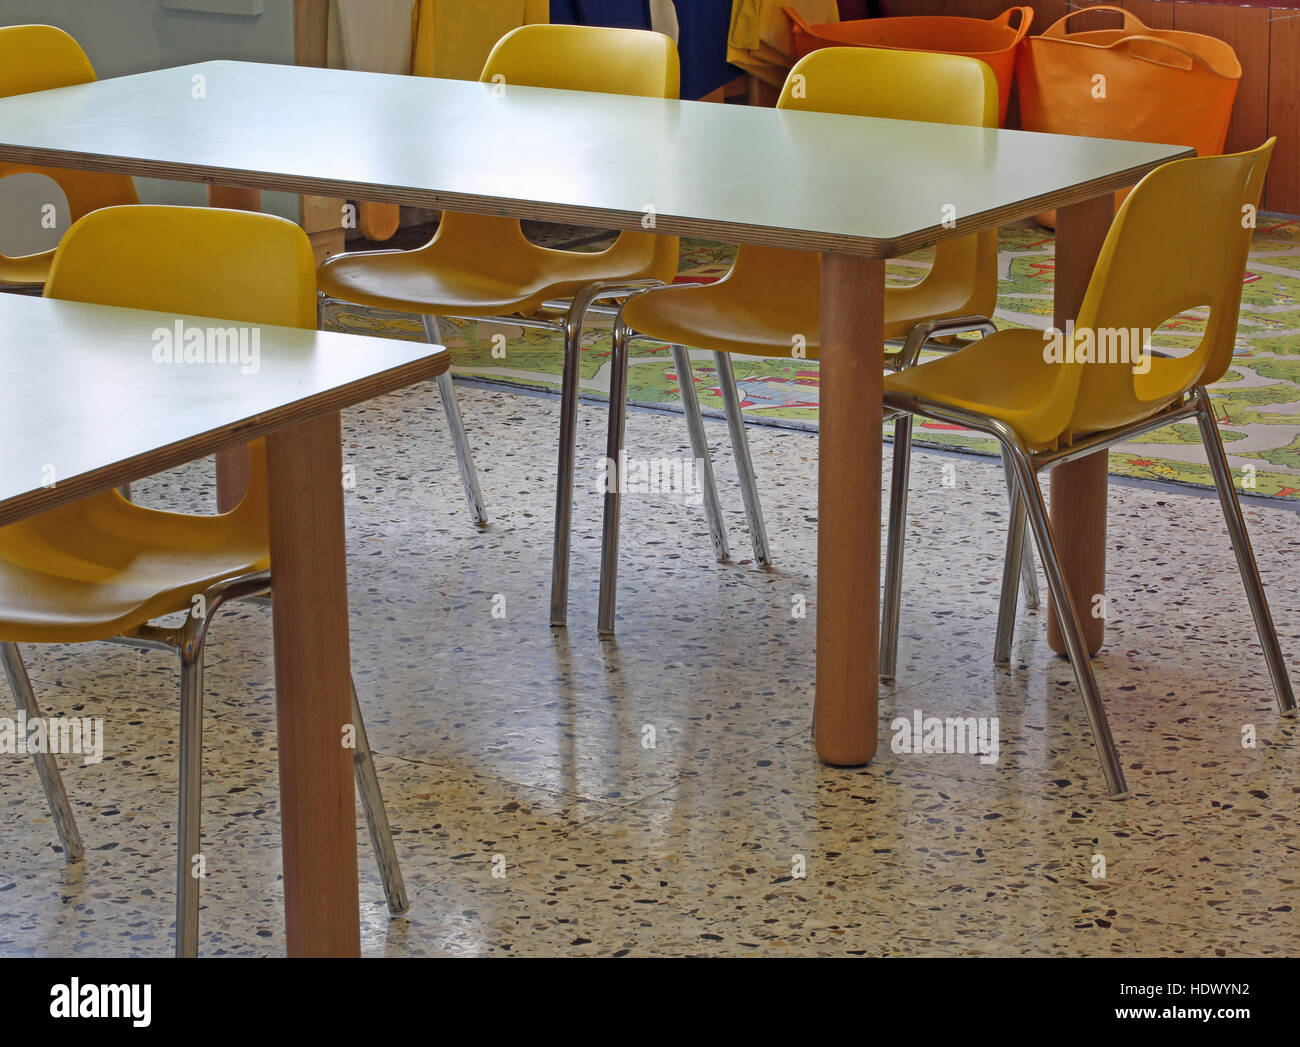 gelbe Stühle und Tischchen in der Kindergarten-Schule Stockfoto